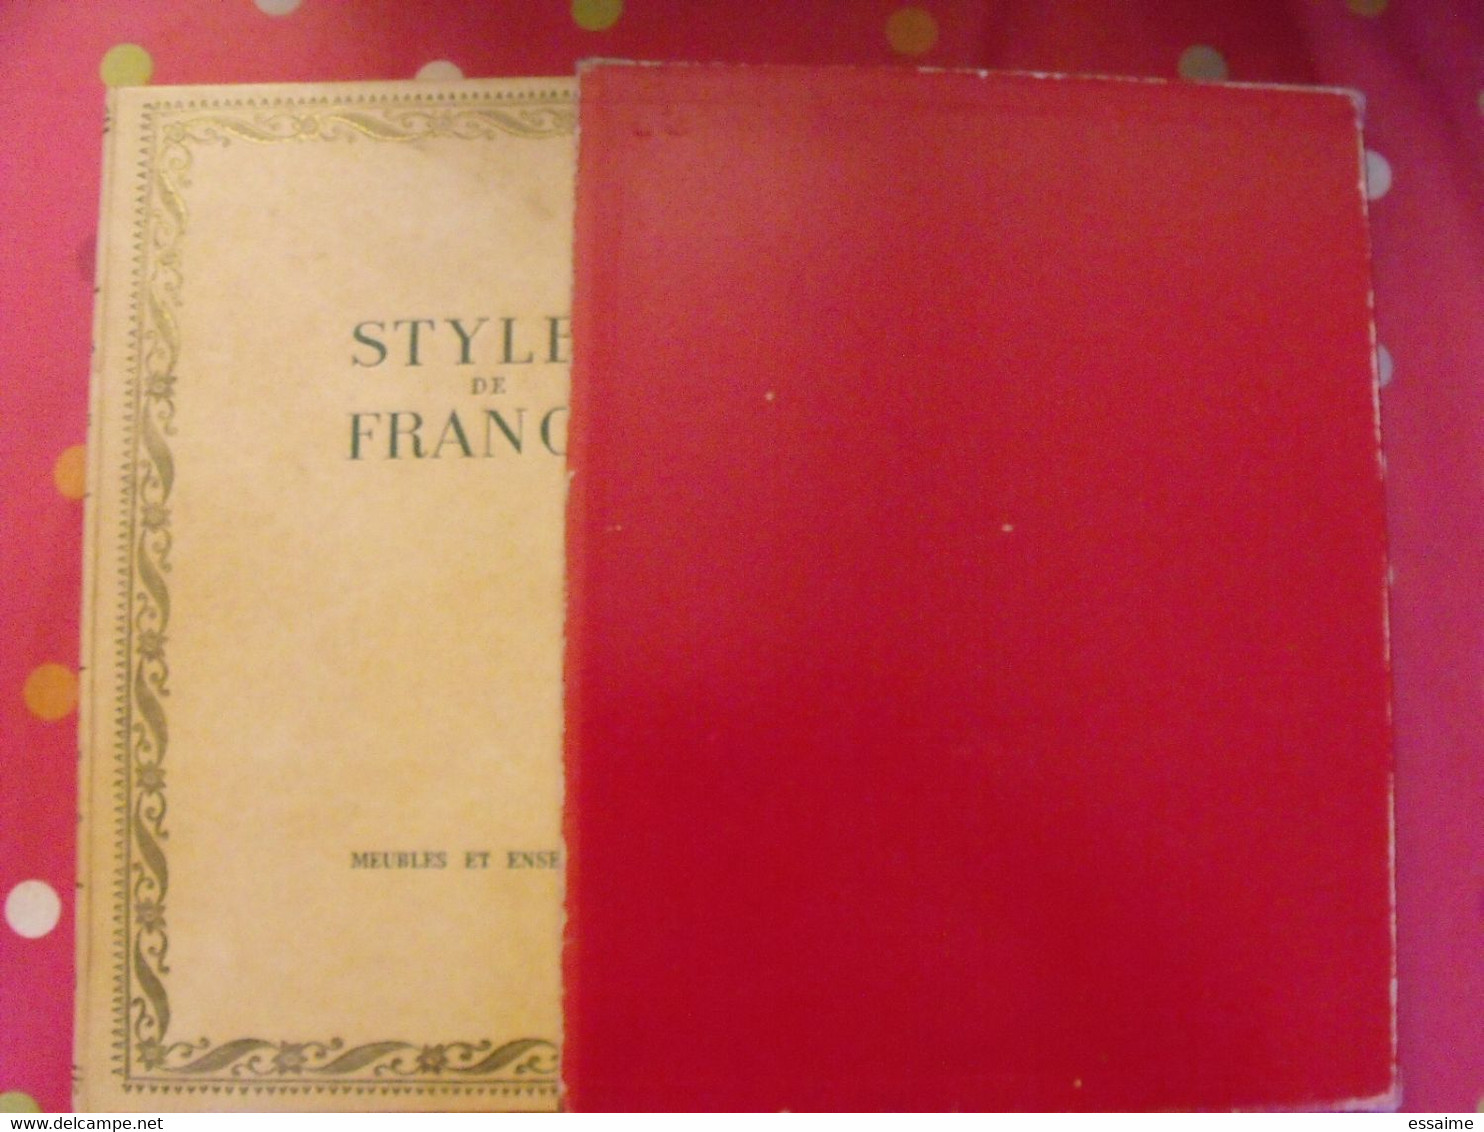 Styles De France "meubles Et Ensembles". Plaisir De France Vers 1950-60. Très Illustré. Beau Livre Avec Emboitage - Innendekoration